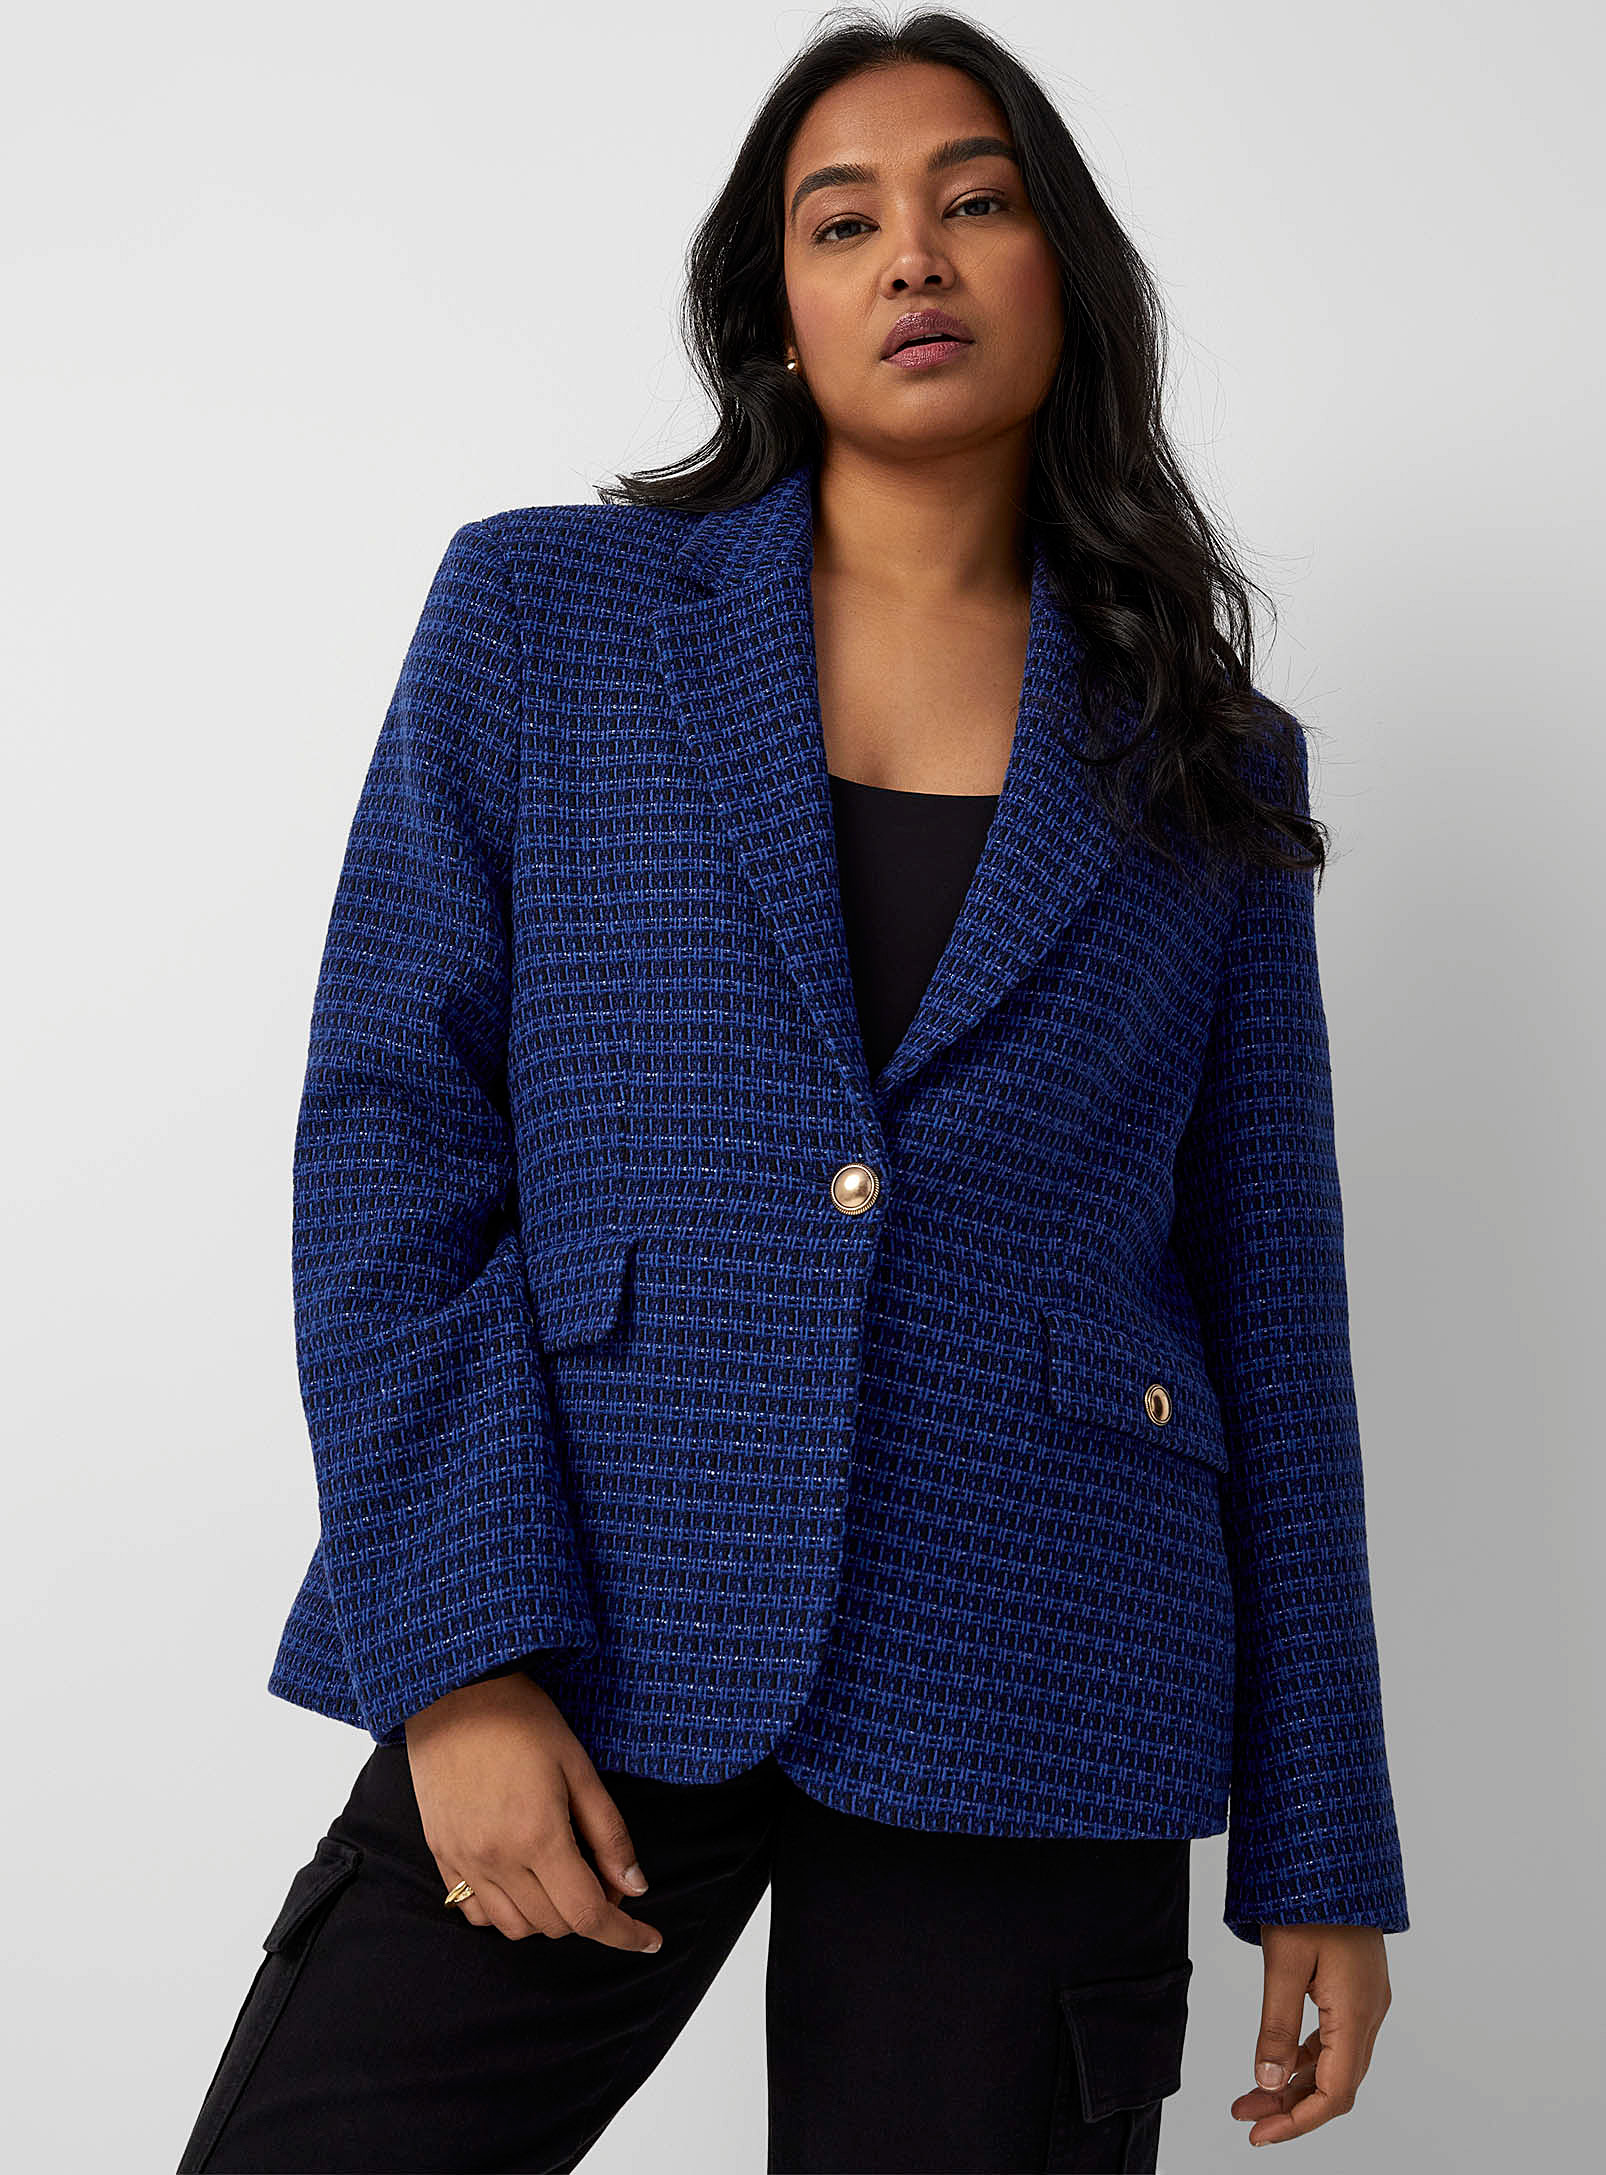 Contemporaine - Women's Midnight blue tweed Blazer Jacket